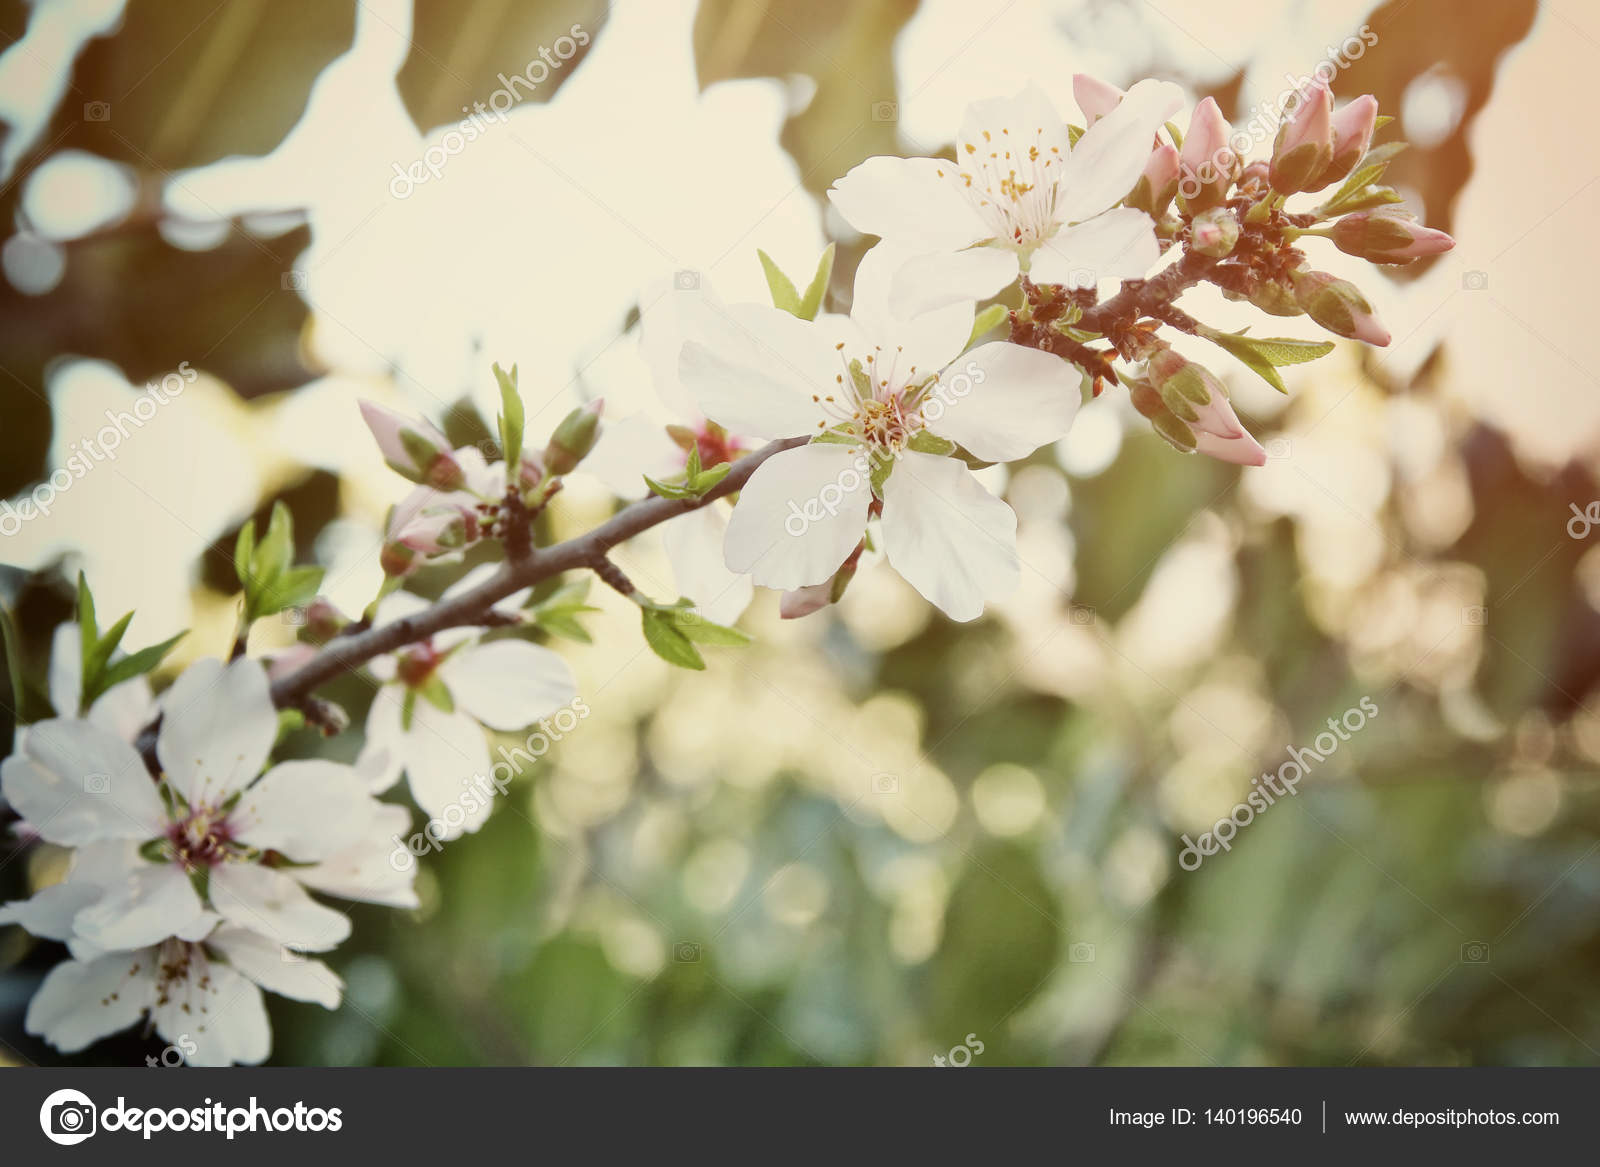 Fondo del árbol de flores de cerezo blanco de primavera: fotografía de  stock © tomert #140196540 | Depositphotos